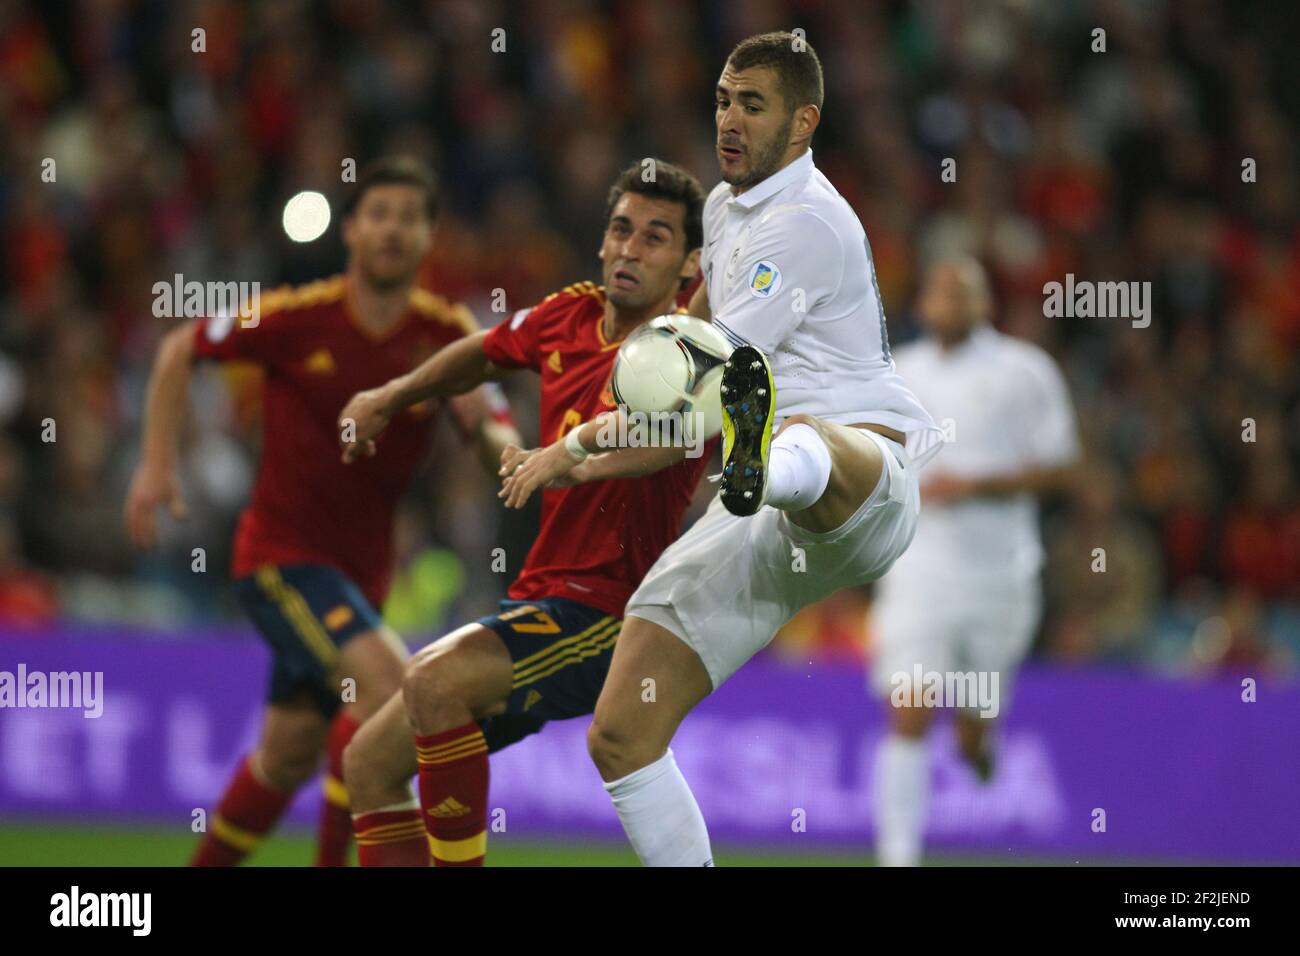 FUSSBALL - FIFA FUSSBALL-WELTMEISTERSCHAFT 2014 - QUALIFYING - SPANIEN V FRANKREICH - 16/10/2012 - FOTO MANUEL BLONDAU / AOP PRESSE / DPPI - KARIM BENZEMA Stockfoto